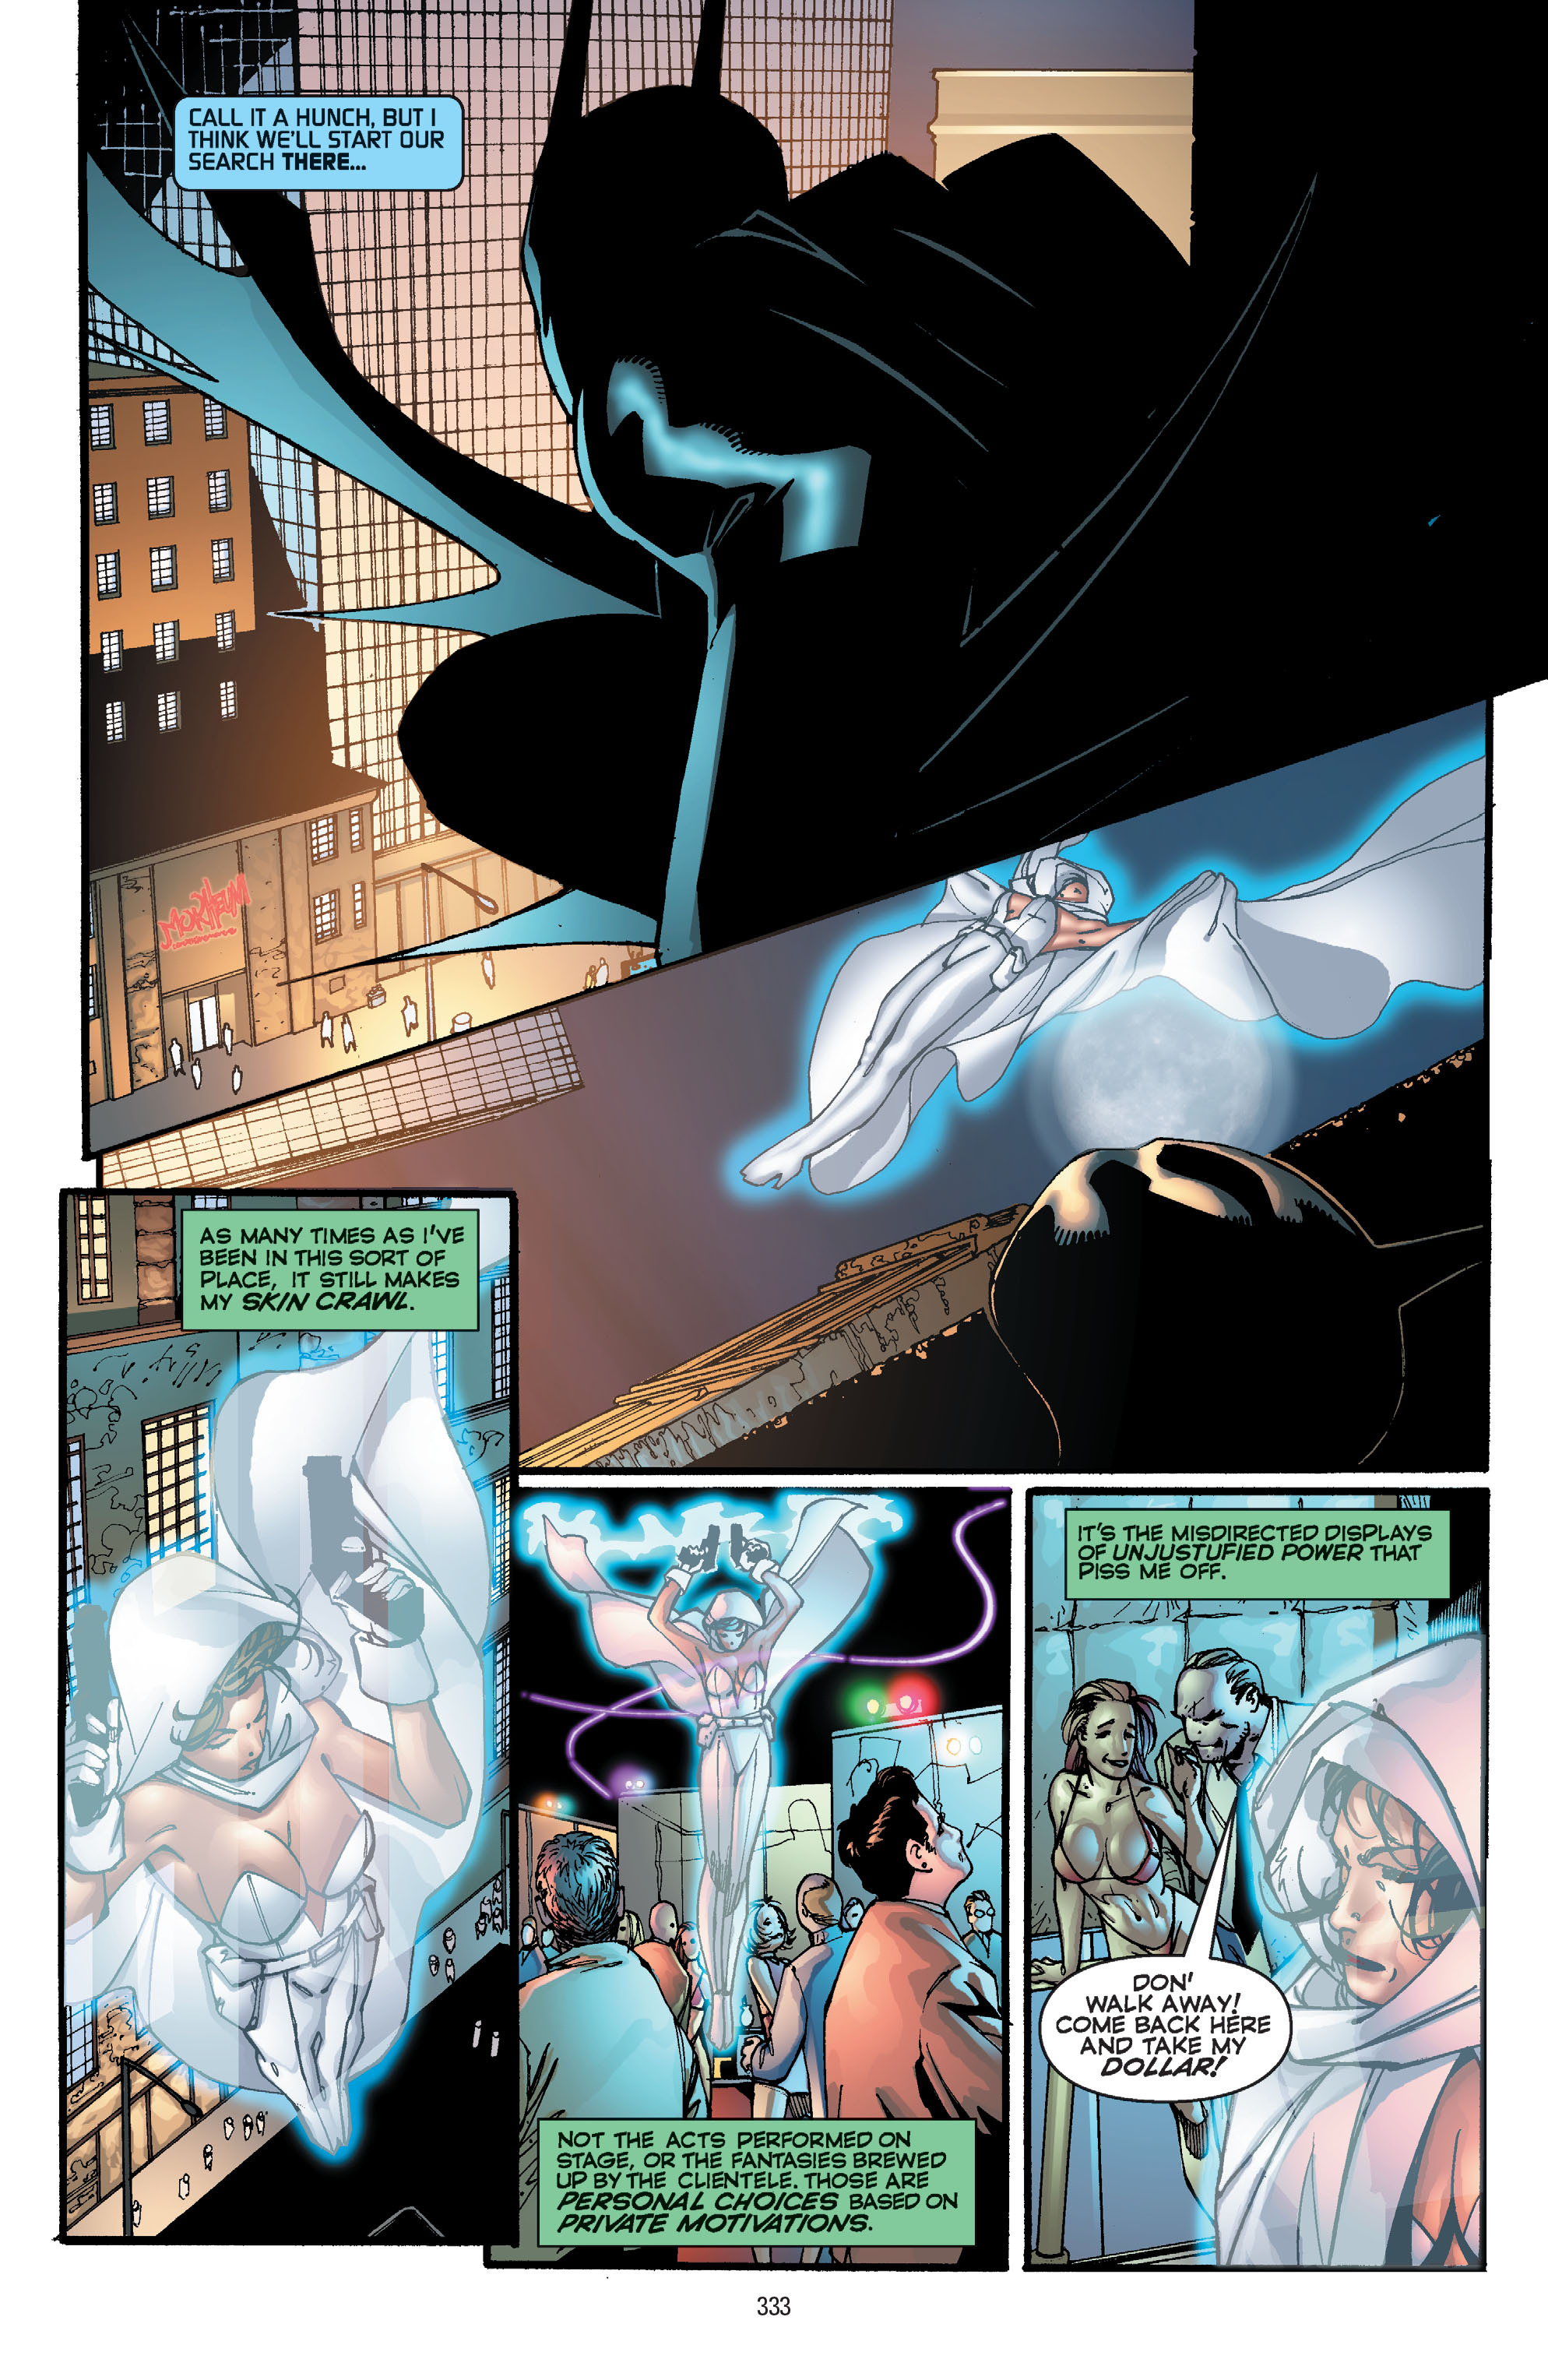 DC Comics/Dark Horse Comics: Justice League Full #1 - English 323